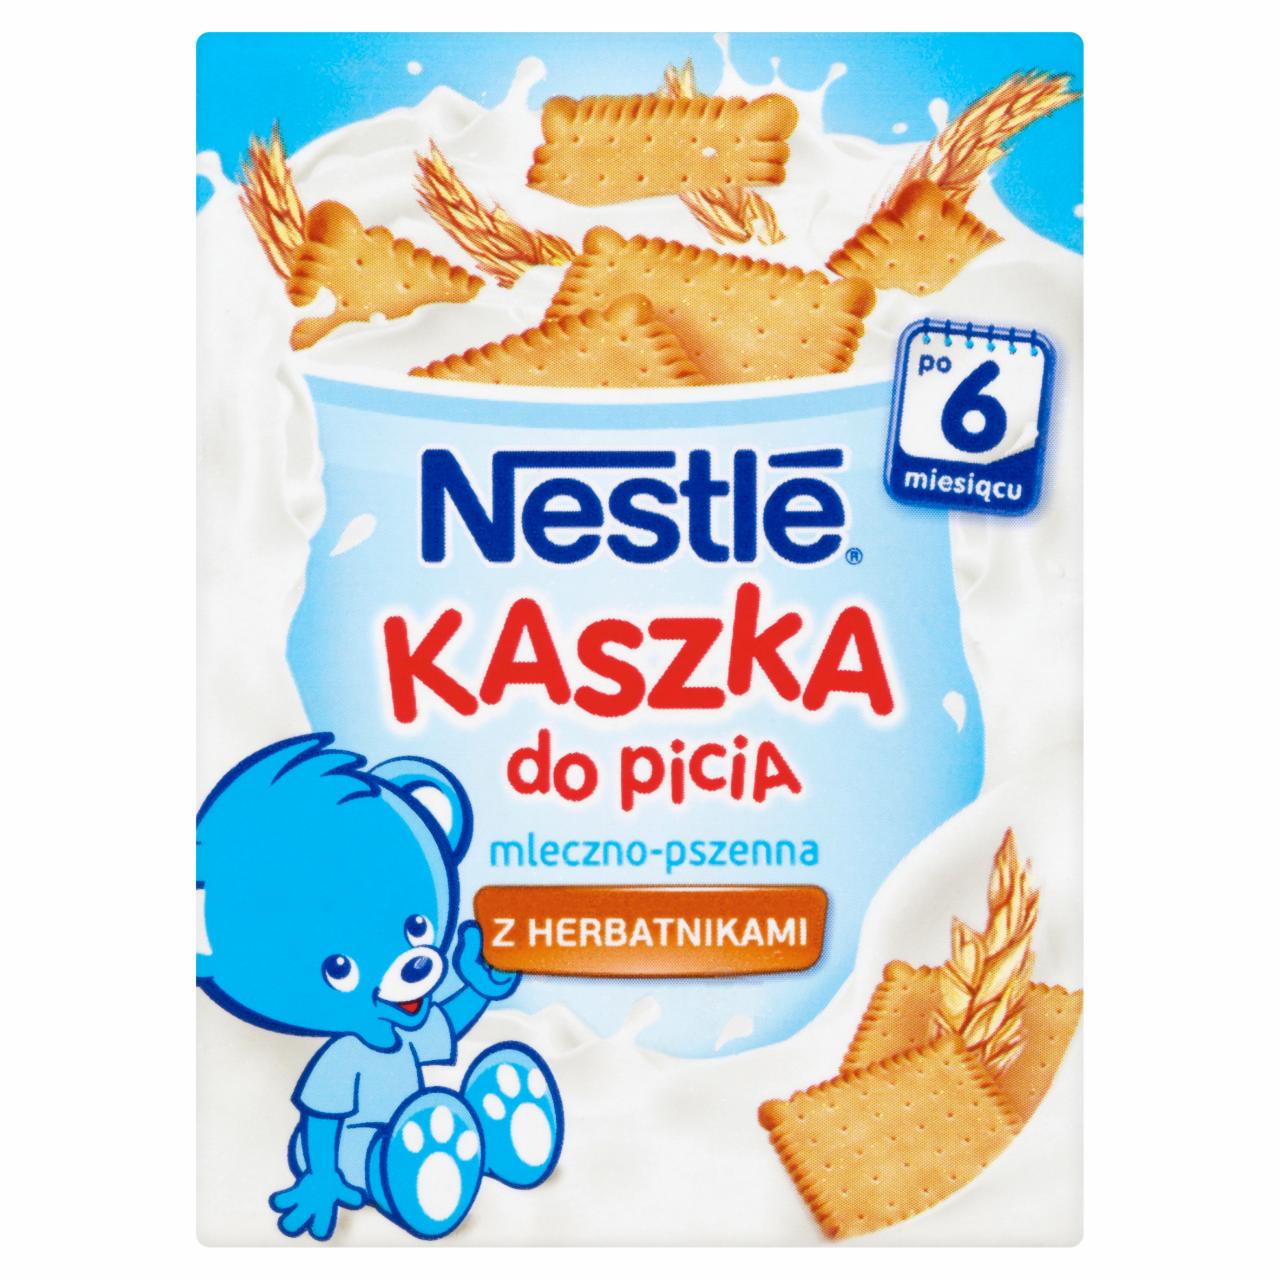 Zdjęcia - Nestlé Kaszka do picia mleczno-pszenna z herbatnikami po 6 miesiącu 200 ml